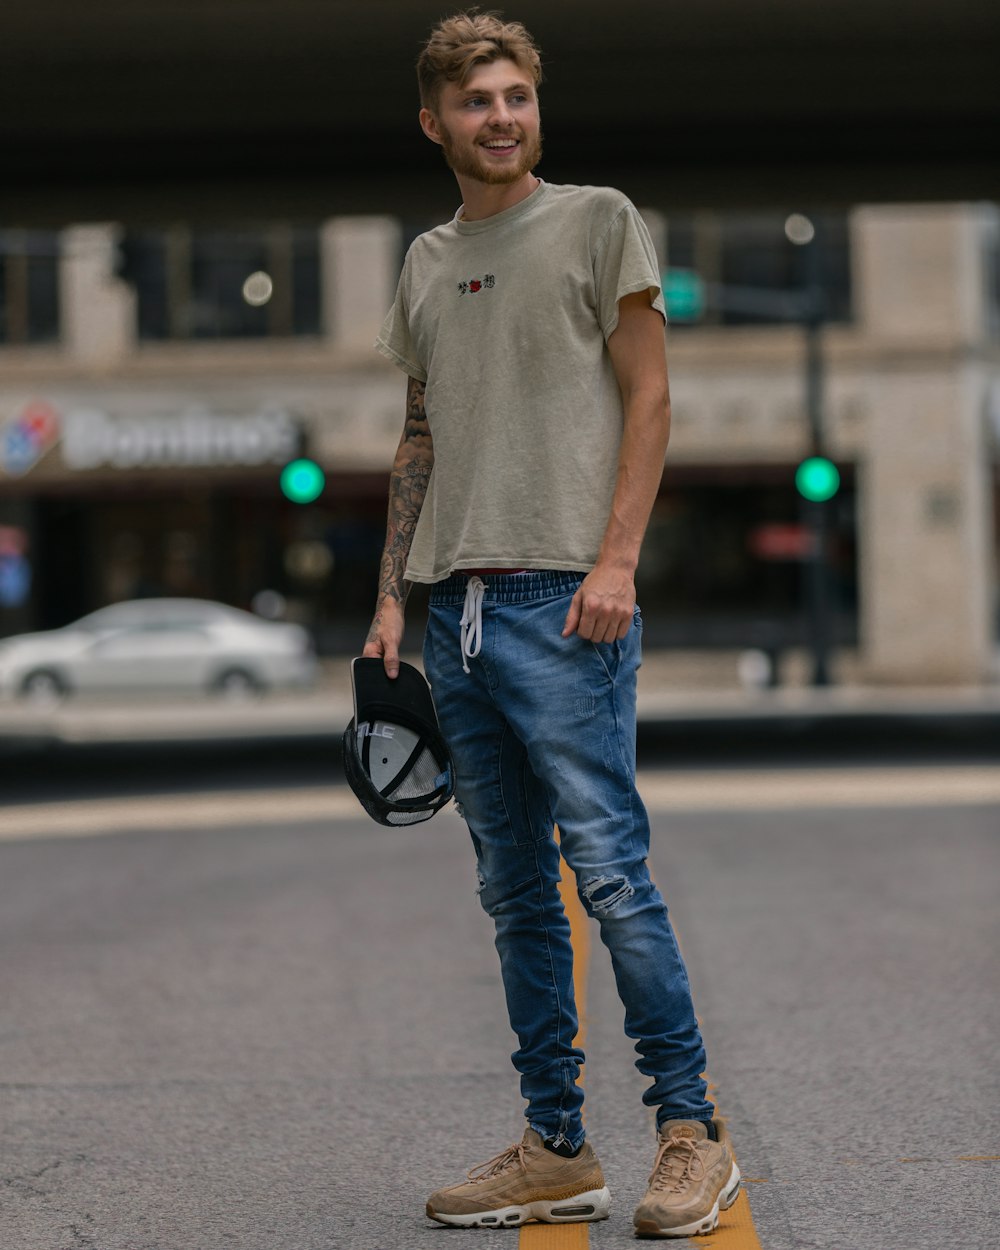 Mann in grauem Rundhals-T-Shirt und blauer Jeans, der tagsüber auf der Straße steht